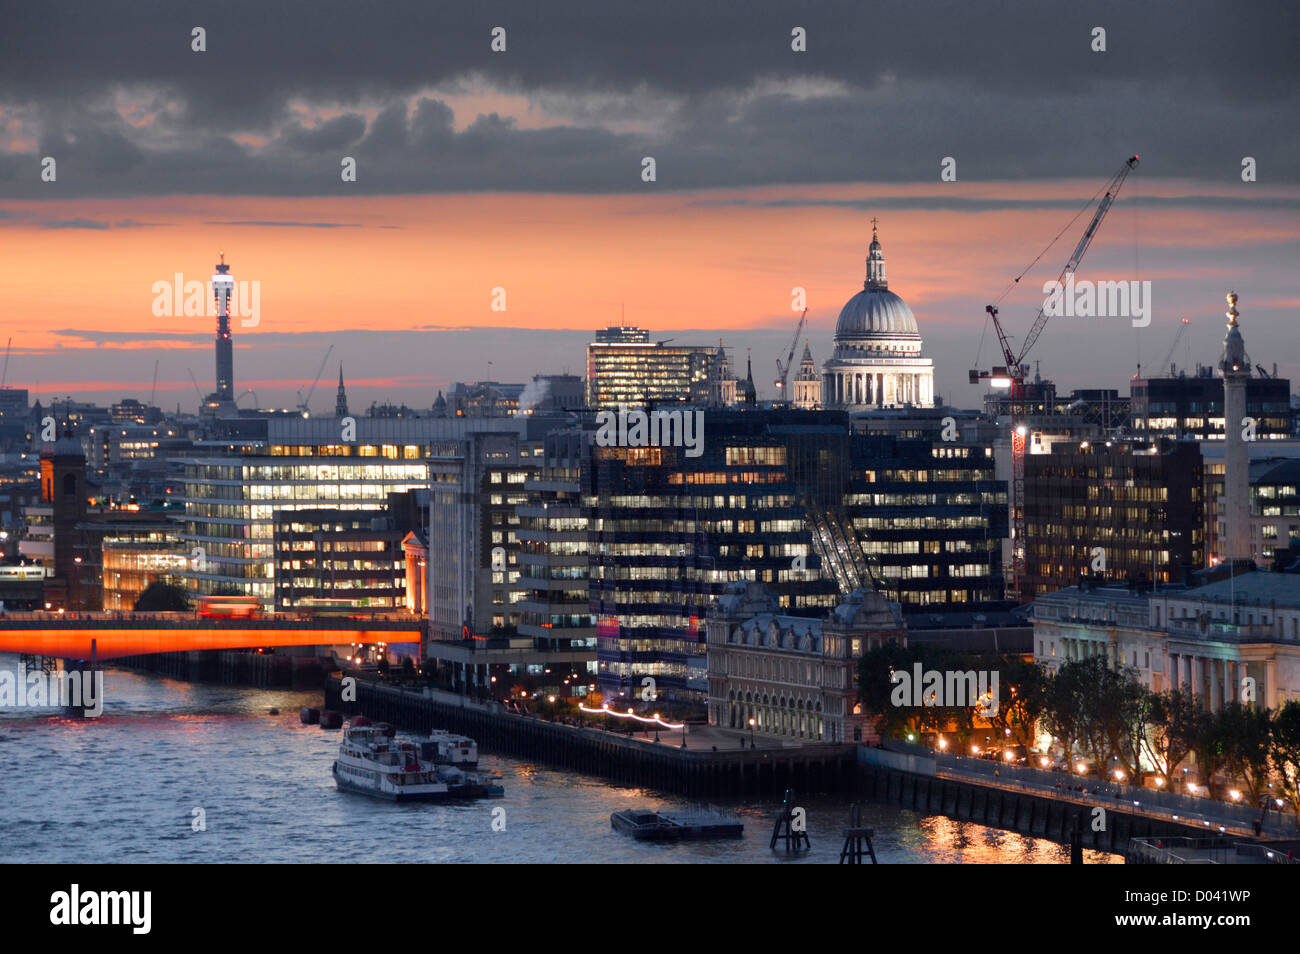 Luftbild mit Blick auf die Themse & Sonnenuntergang skyline Skyline von London mit beleuchteten Kuppel der St. Pauls Kathedrale Beleuchtung in Bürogebäuden UK Stockfoto